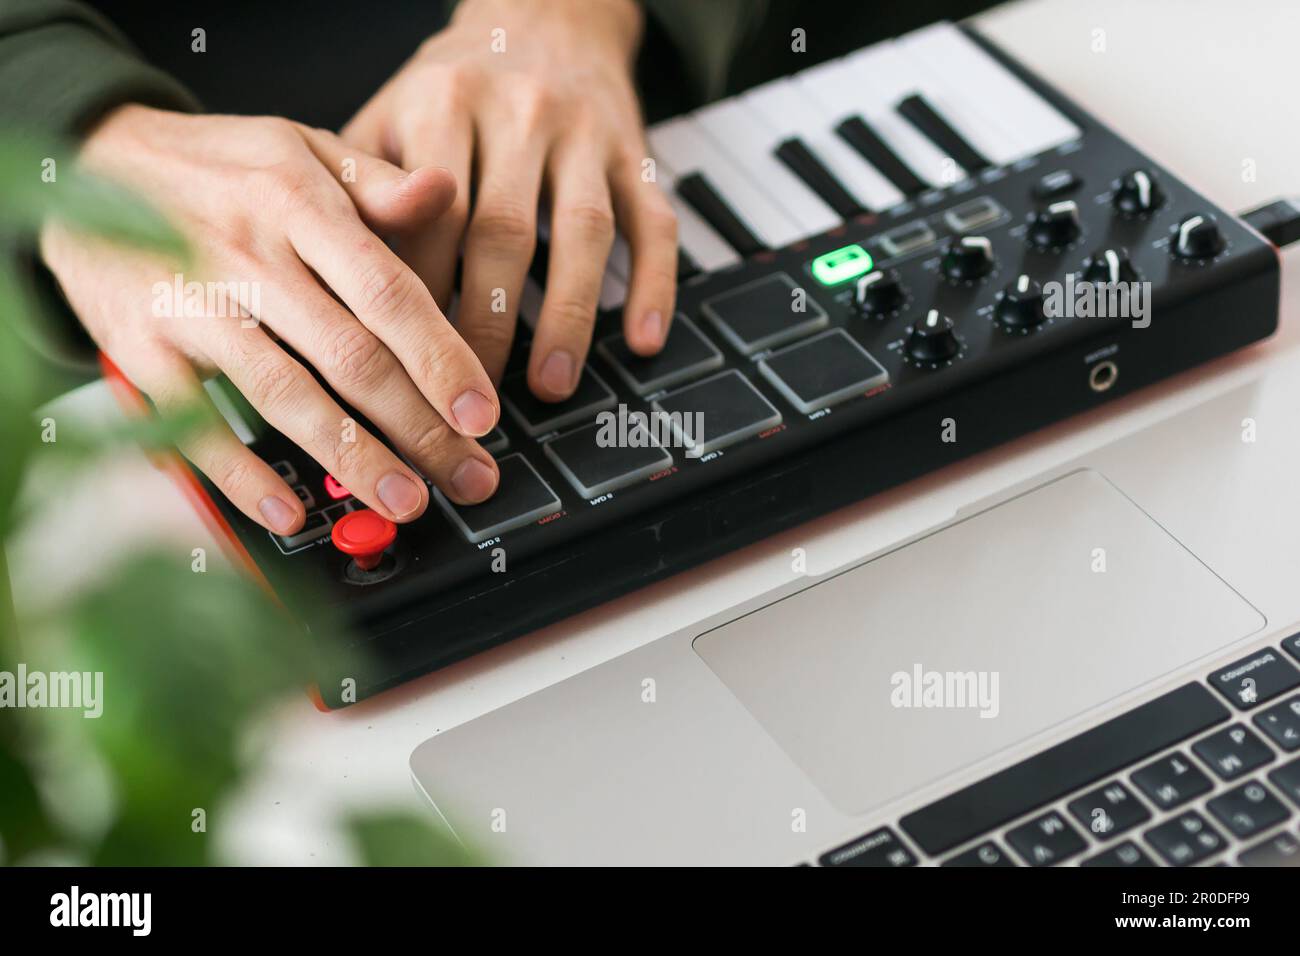 Vista superior del productor o arreglista de música el ordenador portátil y el teclado midi y otros equipos de audio para crear música en estudio casero. Batidos y Fotografía de